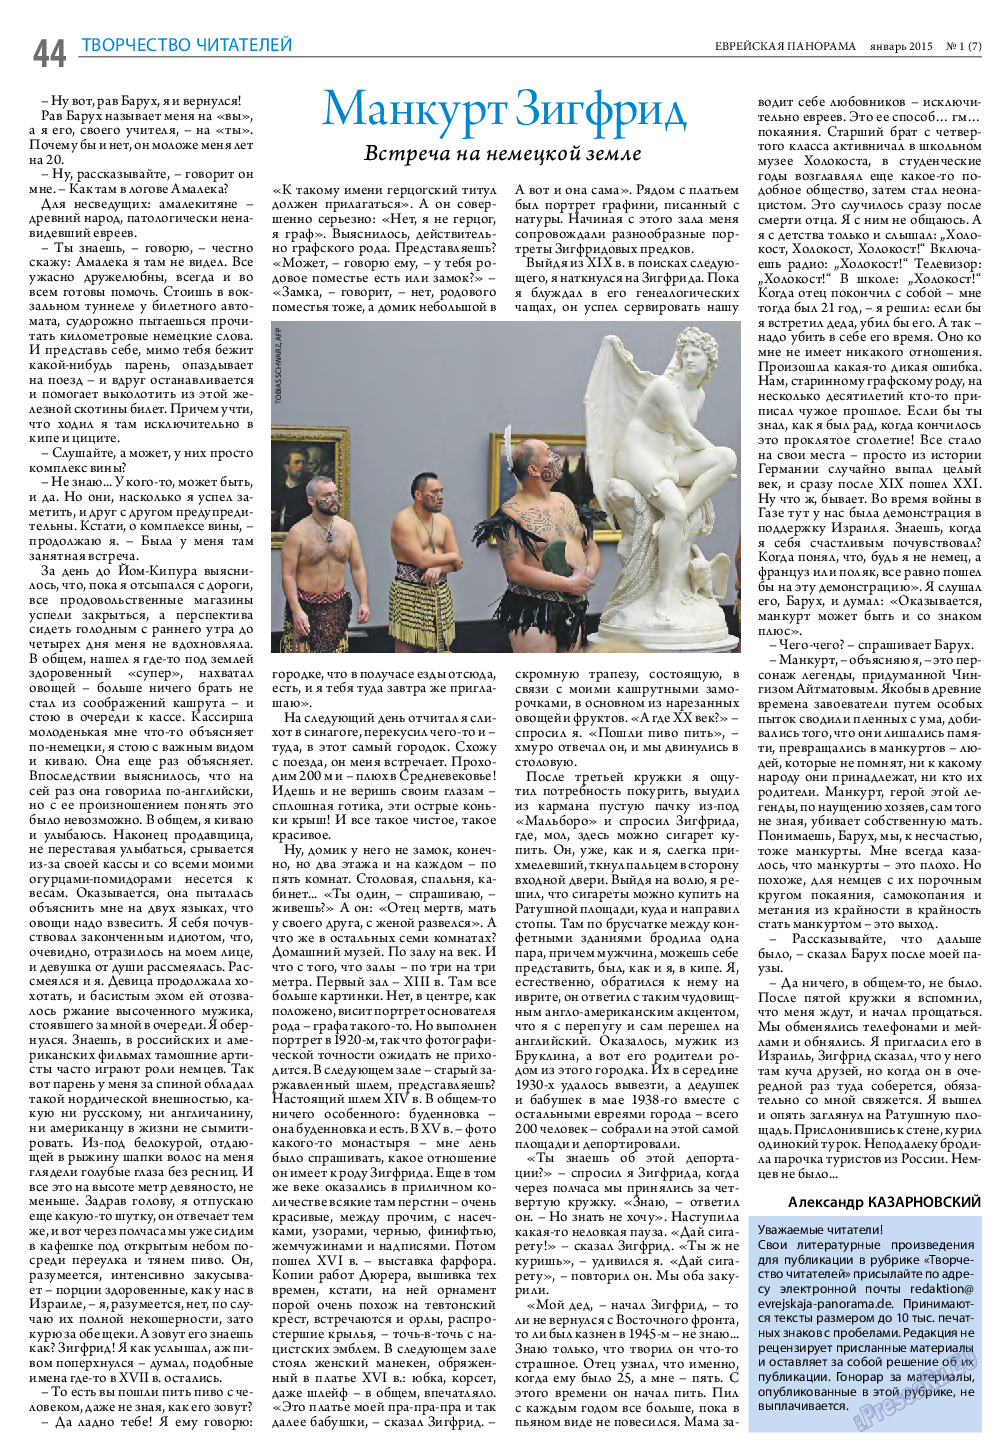 Еврейская панорама (газета). 2015 год, номер 1, стр. 44